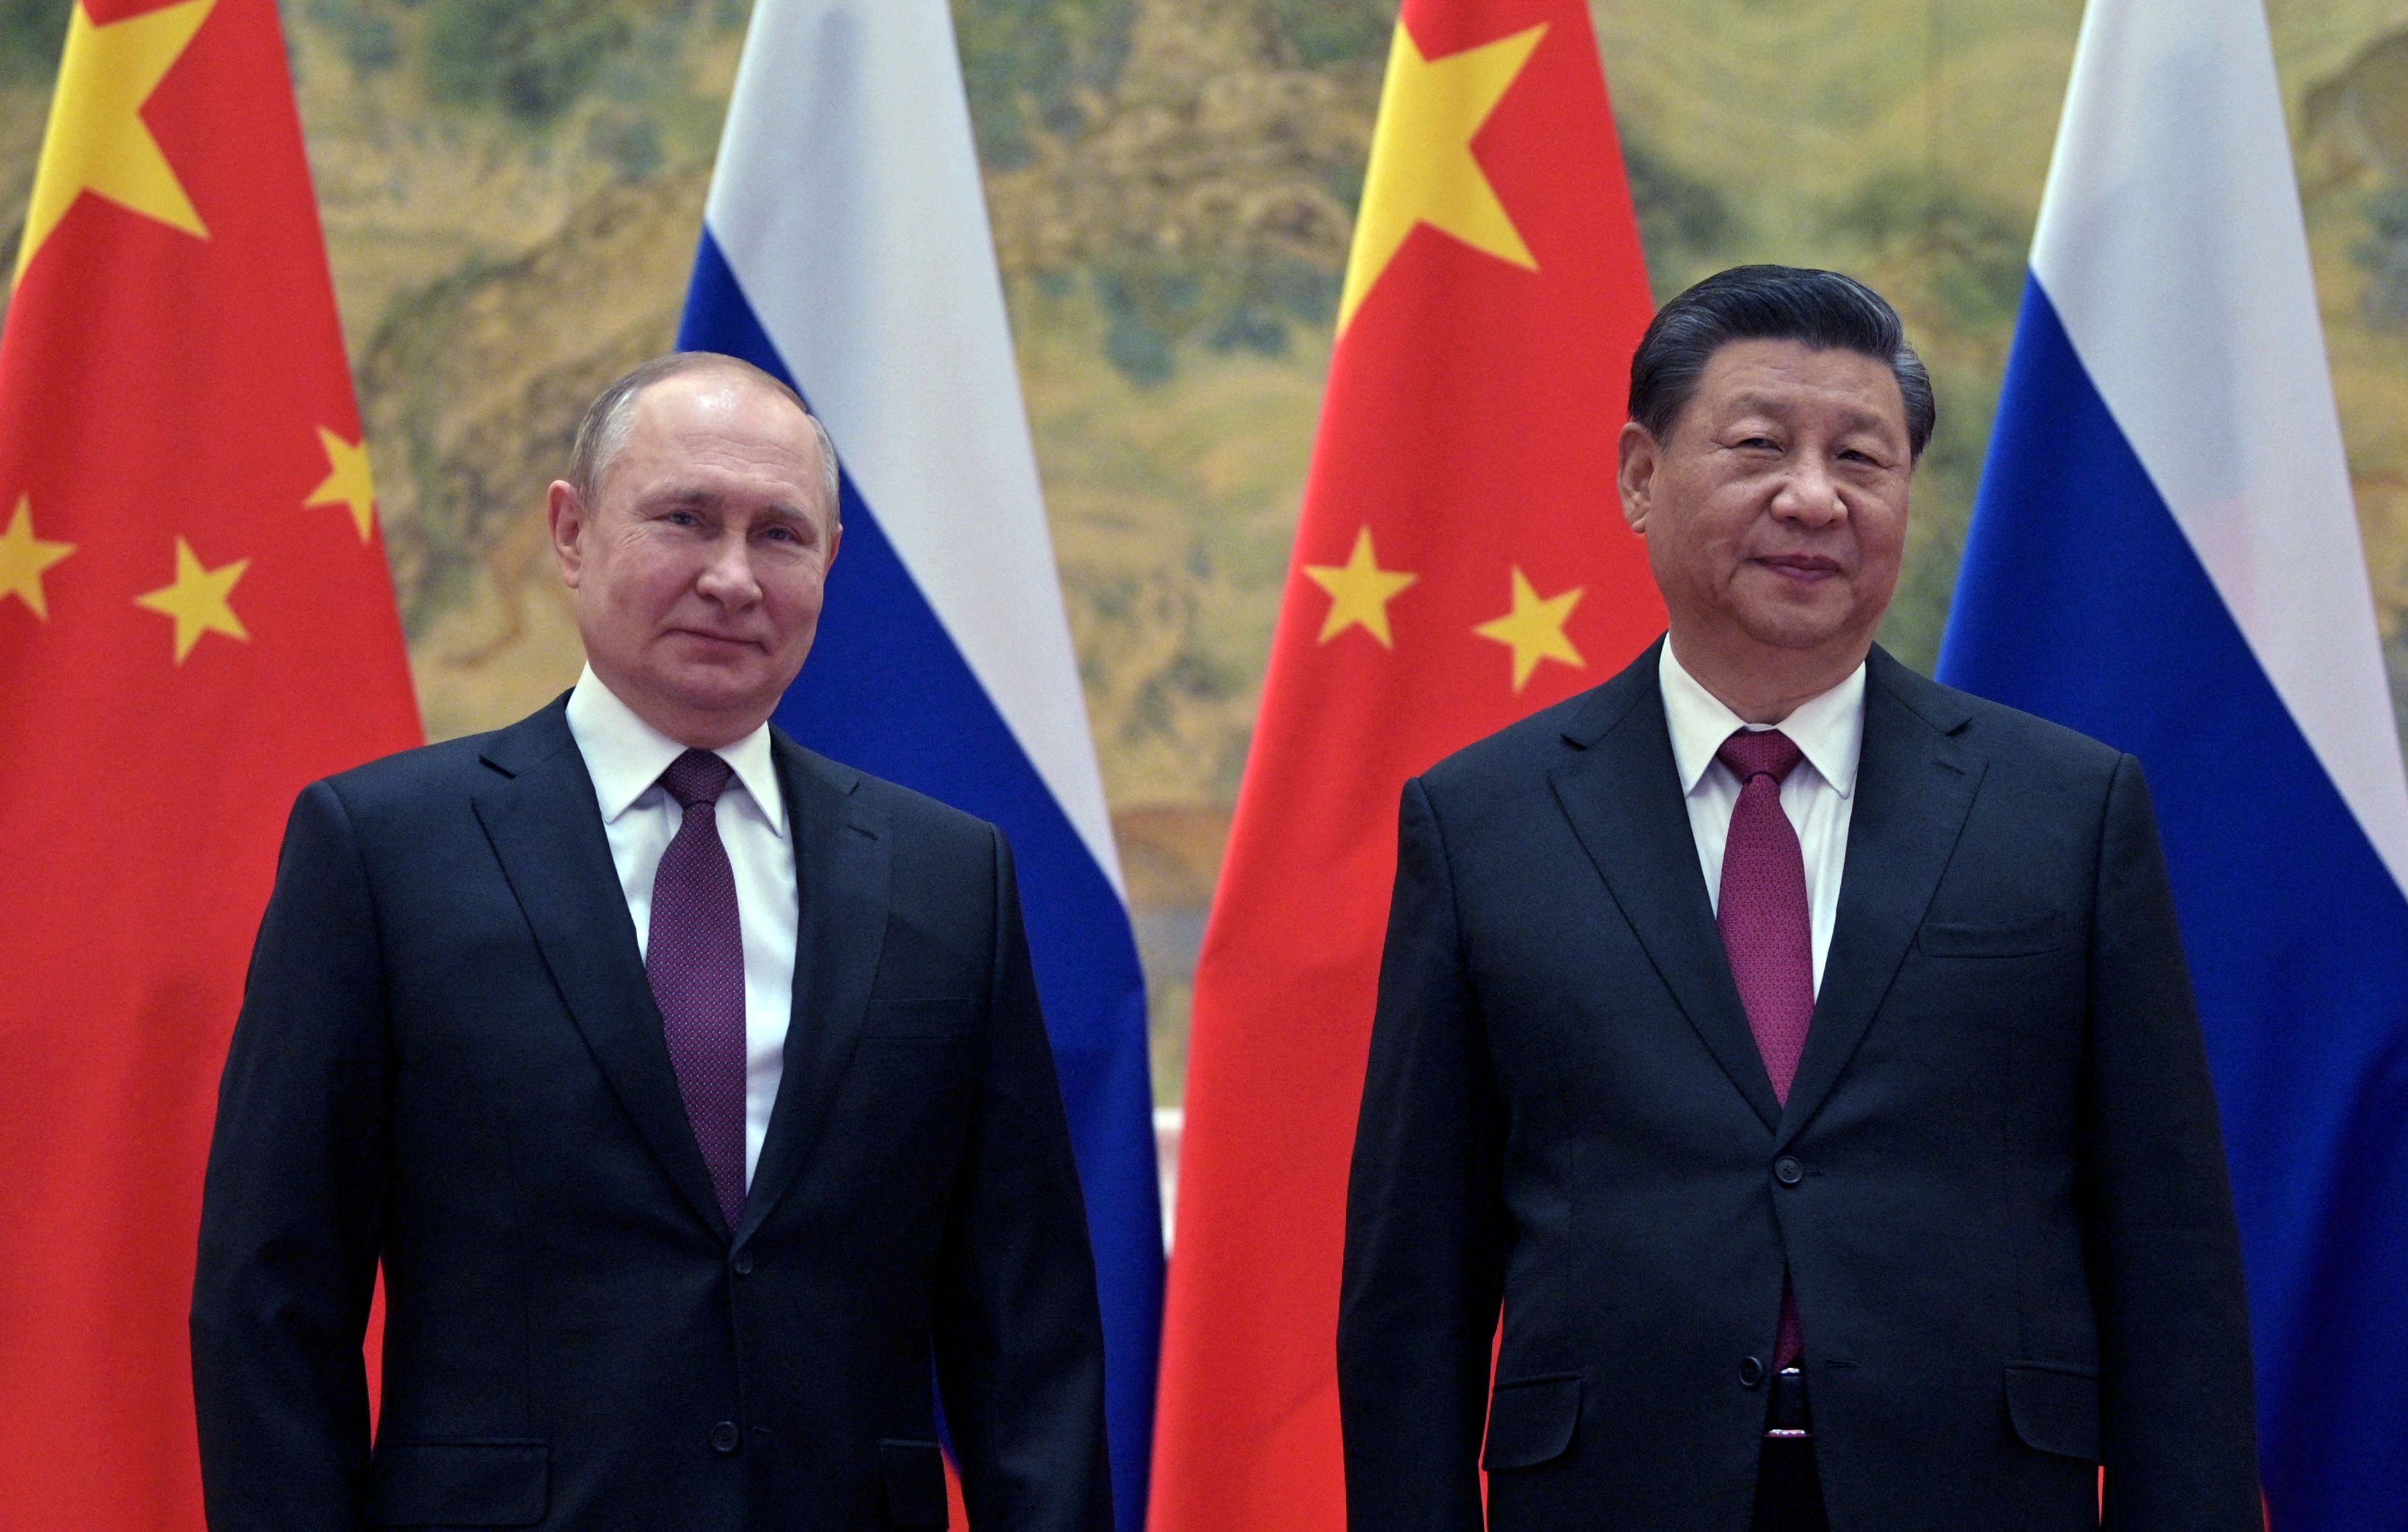 China Warns of Another Crisis 'Detonating' as Xi, Putin Strengthen Ties